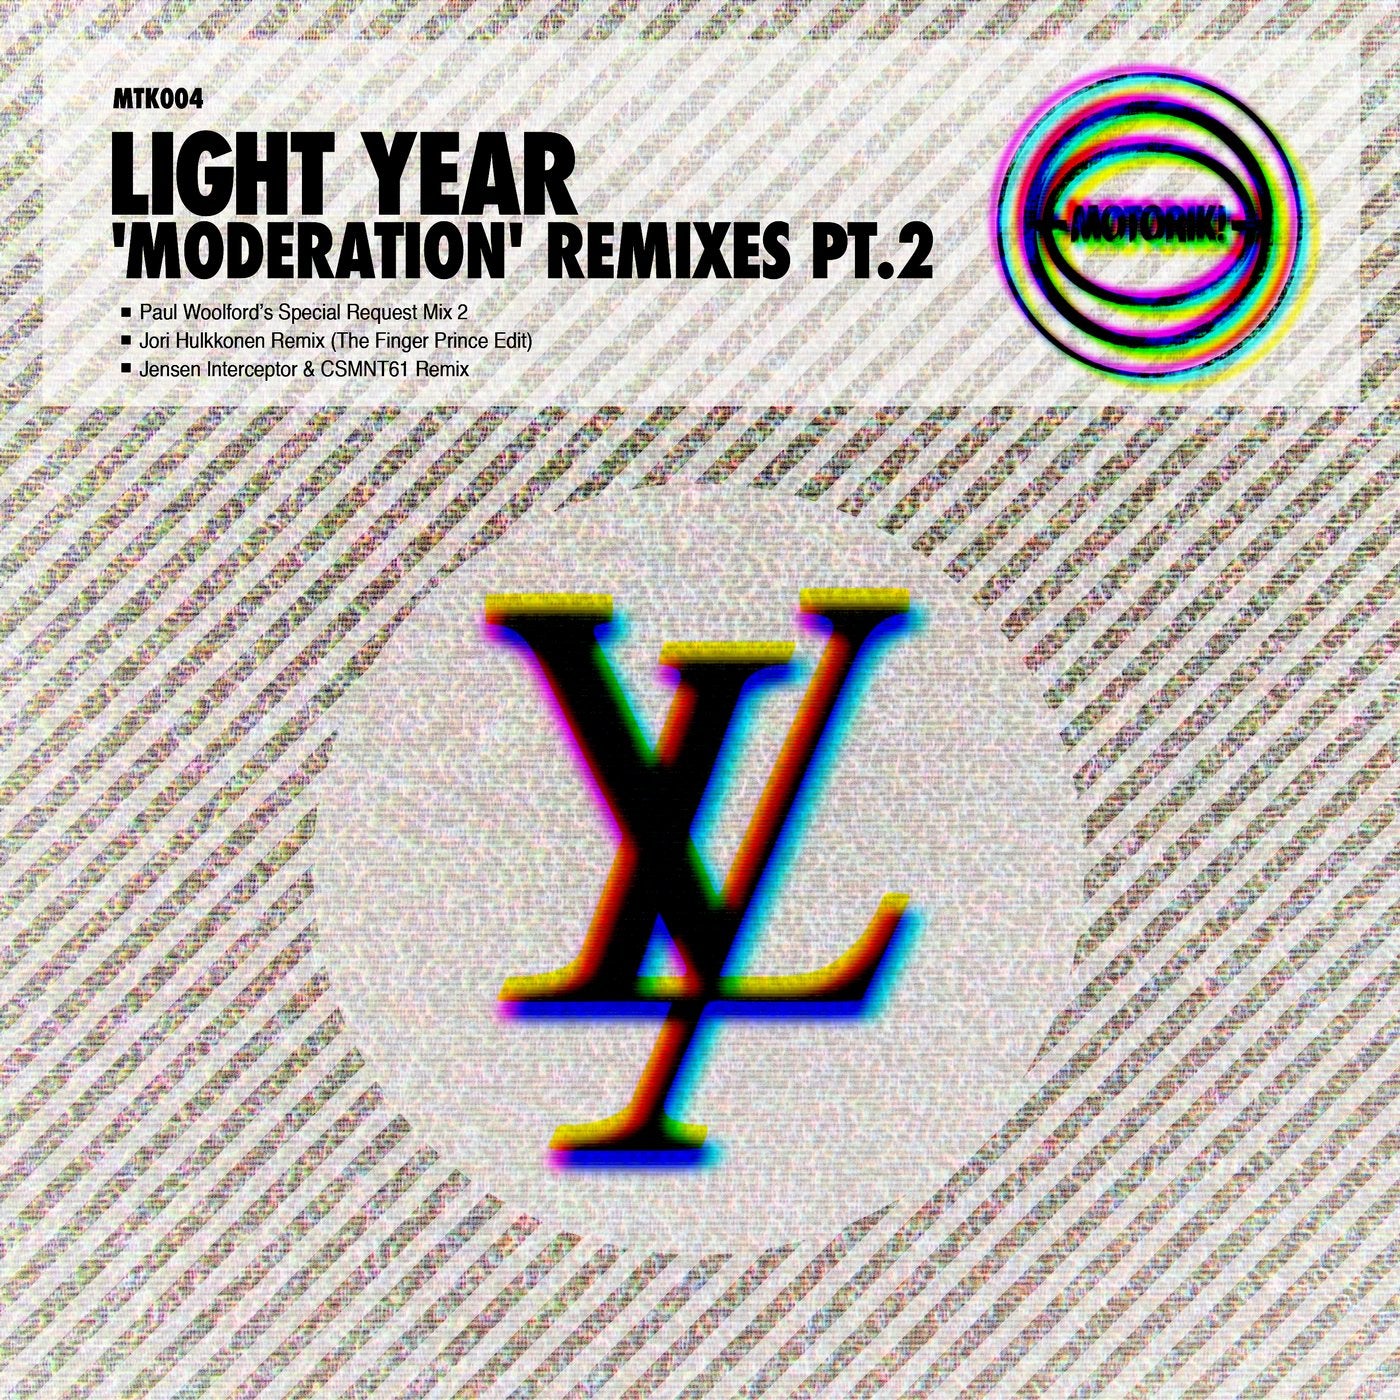 Moderation (Remixes Pt. 2)